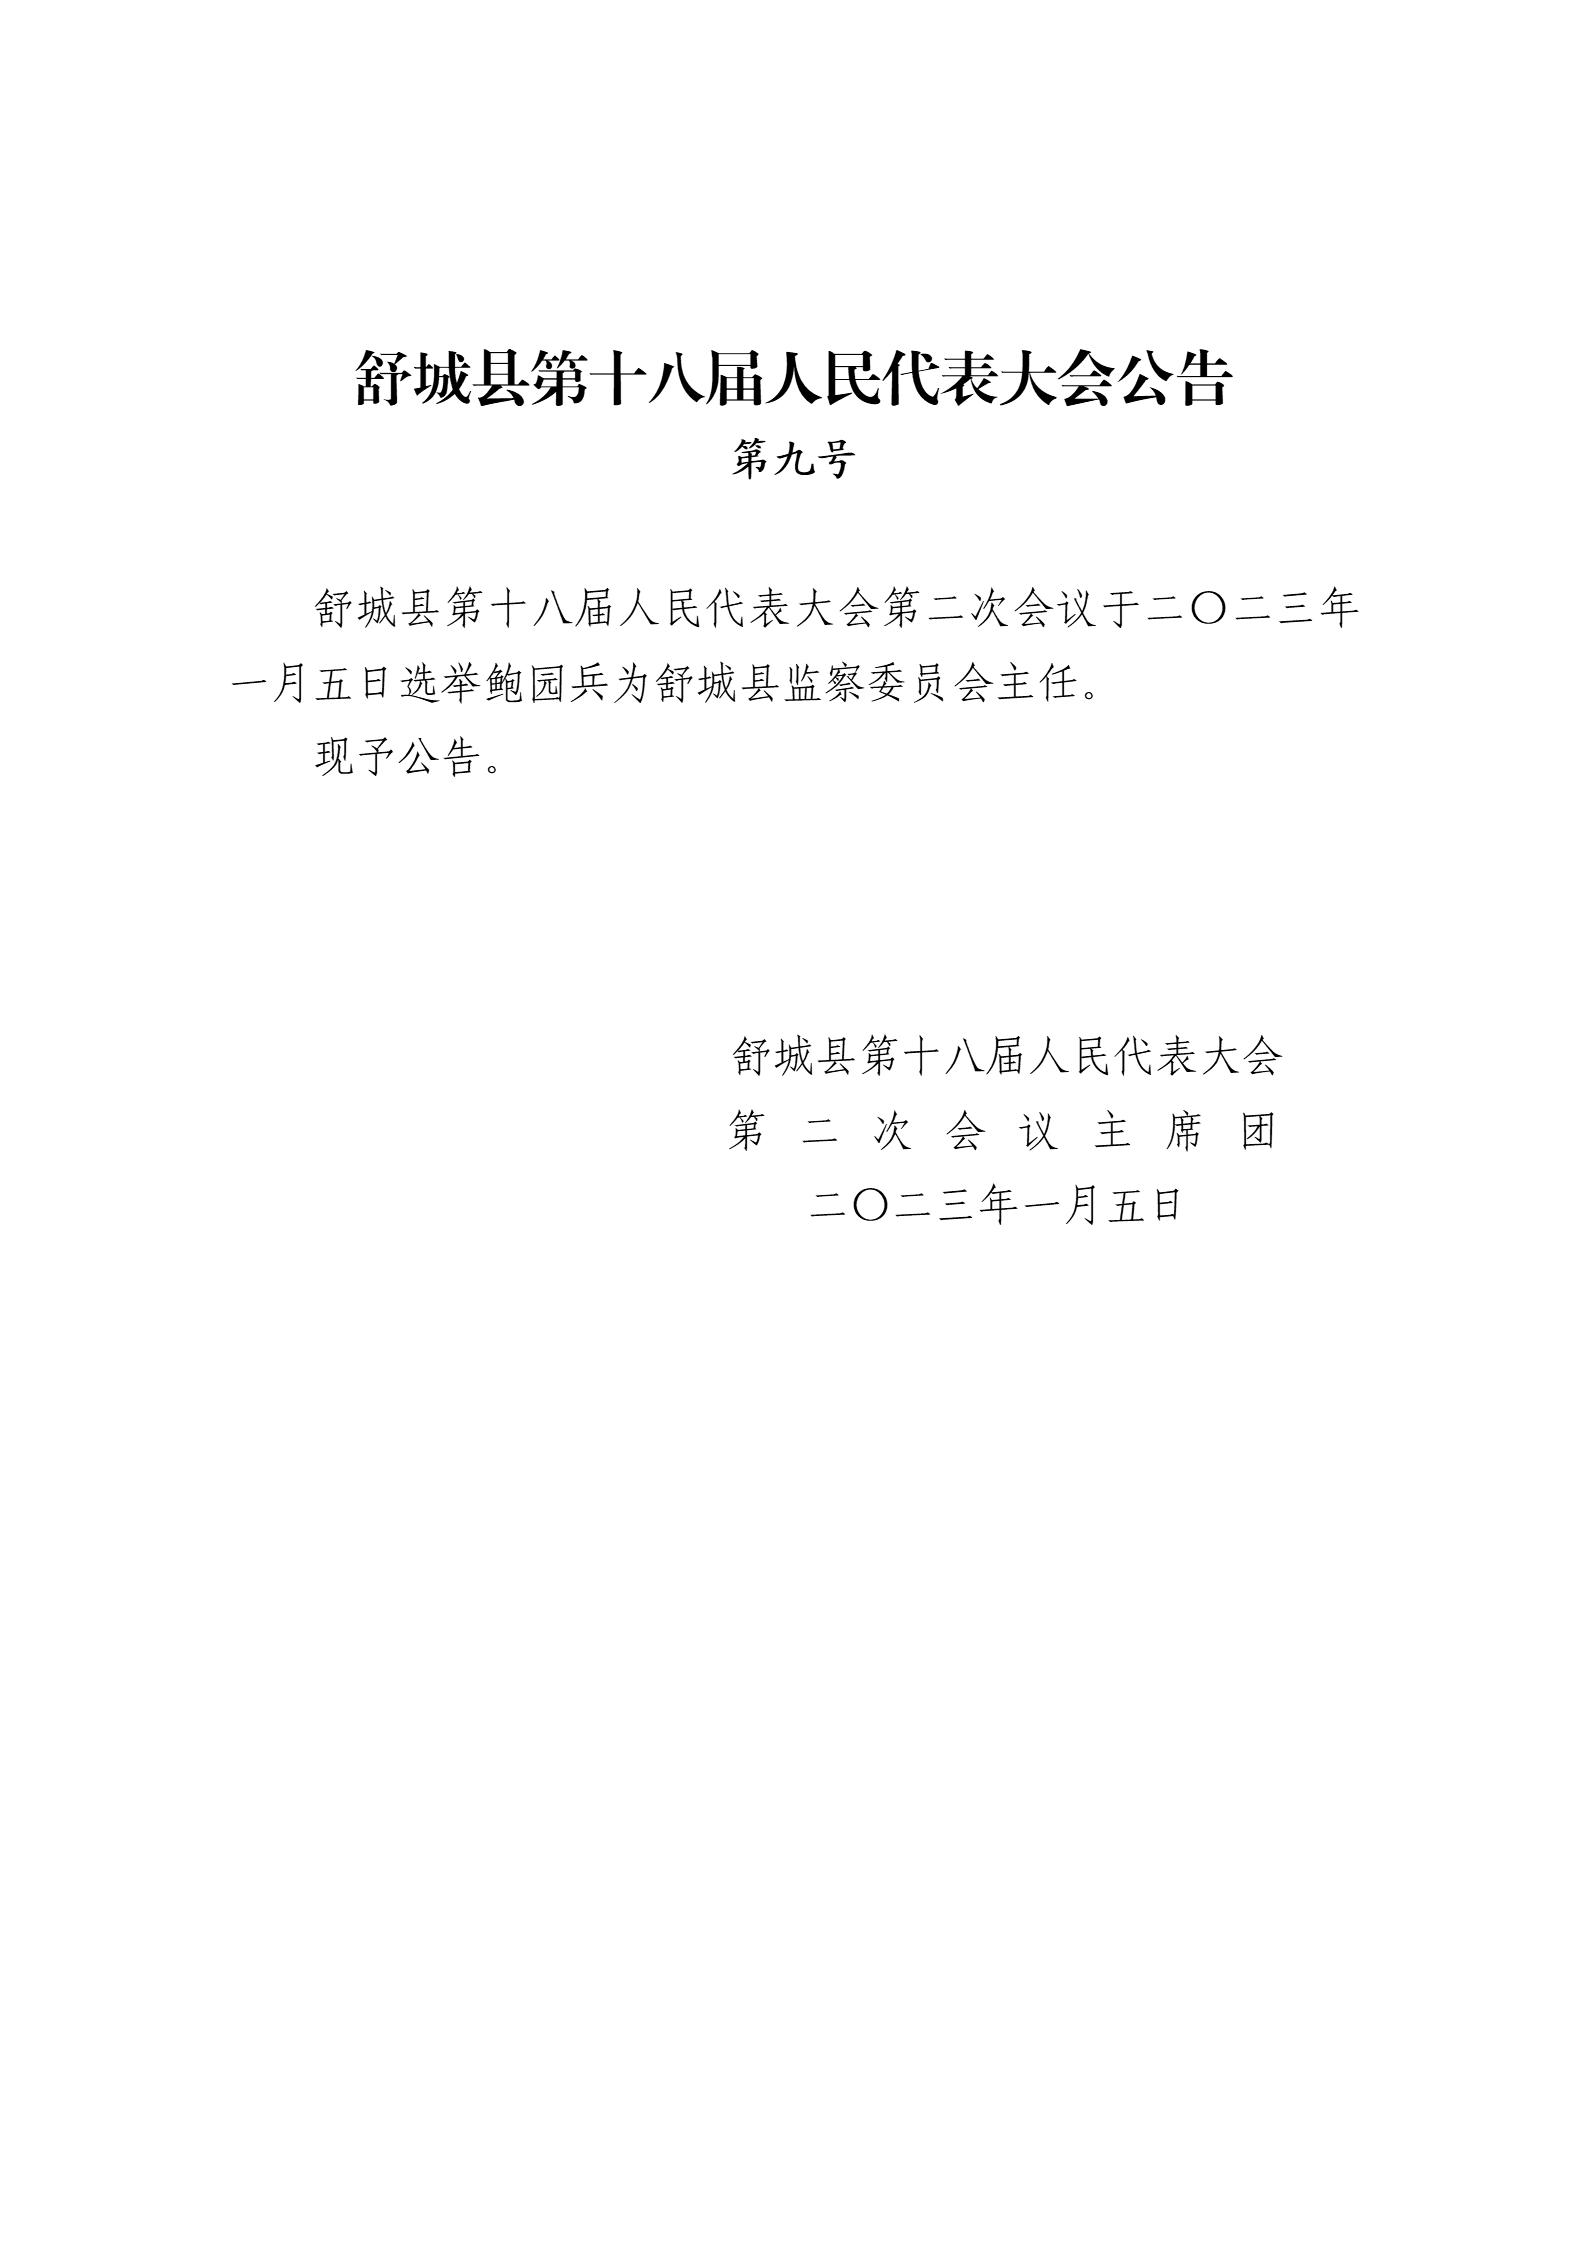 舒城县第十八届人民代表大会第二次会议公告（9-10号）_01.jpg